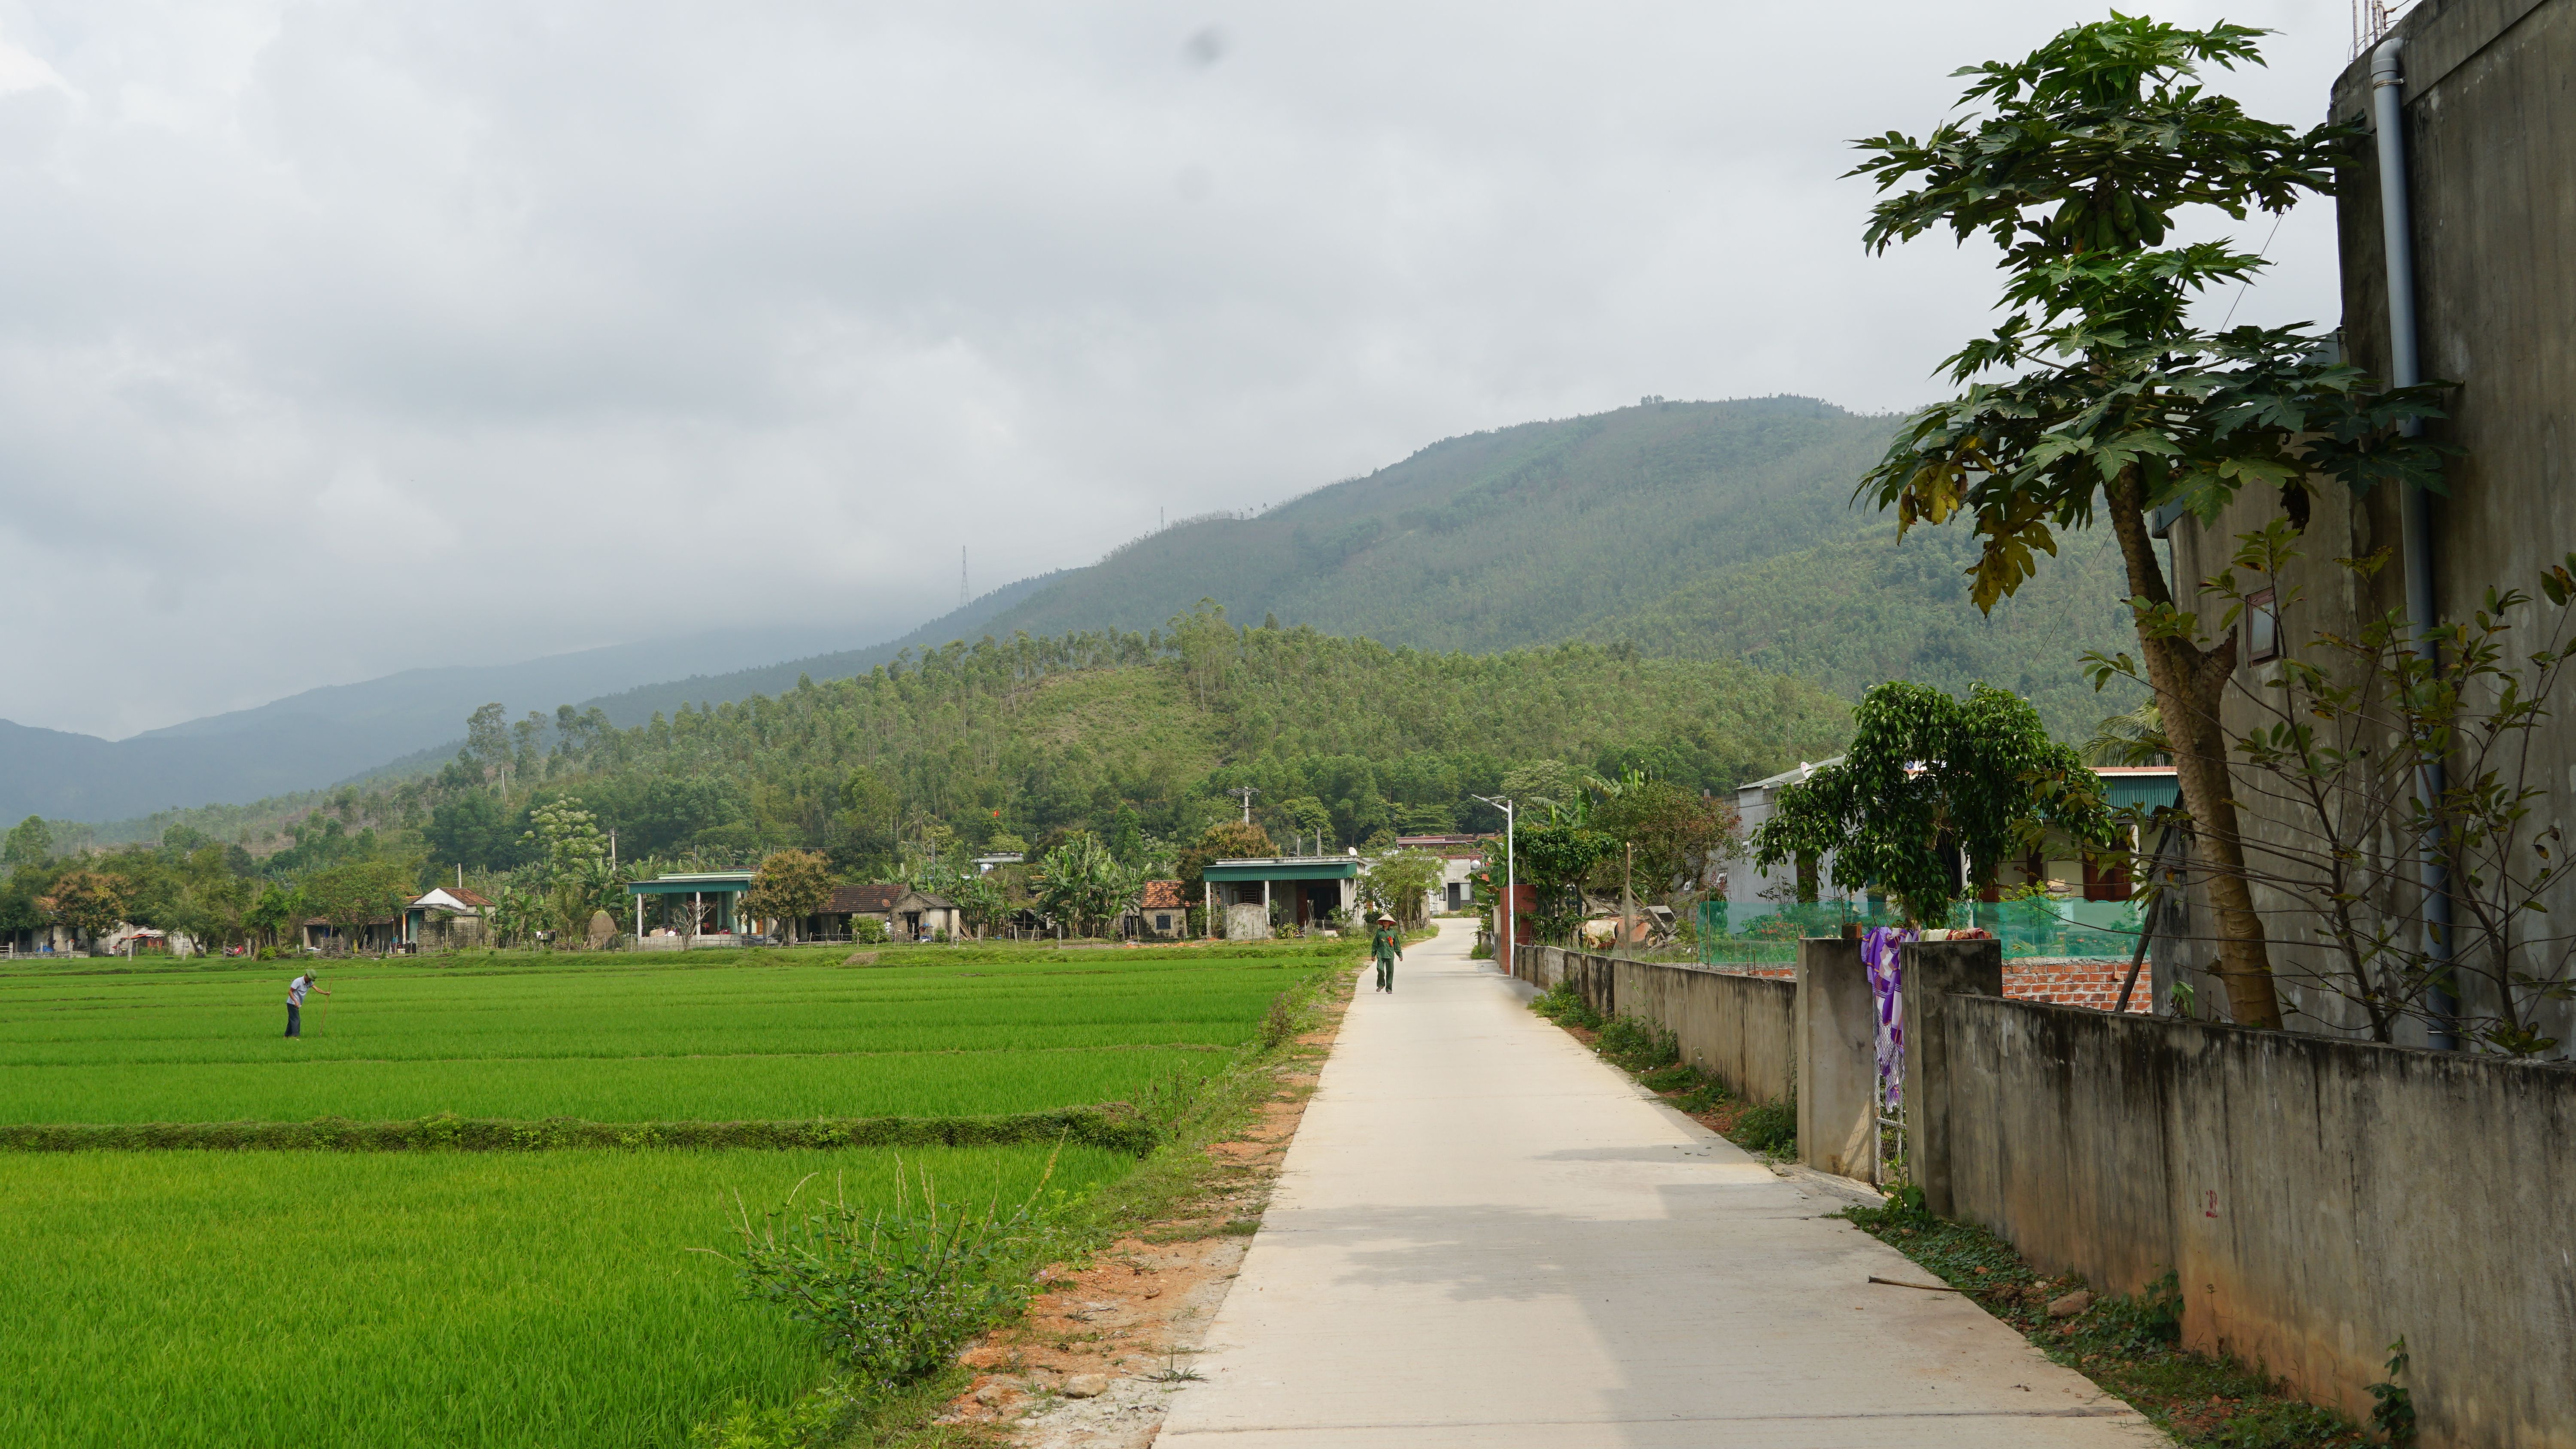 Nhiều tuyến đường giao thông nông thôn ở thôn Hùng Sơn (Quảng Kim) được đầu tư đổ bê tông sạch đẹp, tạo điều kiện thuận lợi cho người dân đi lại.